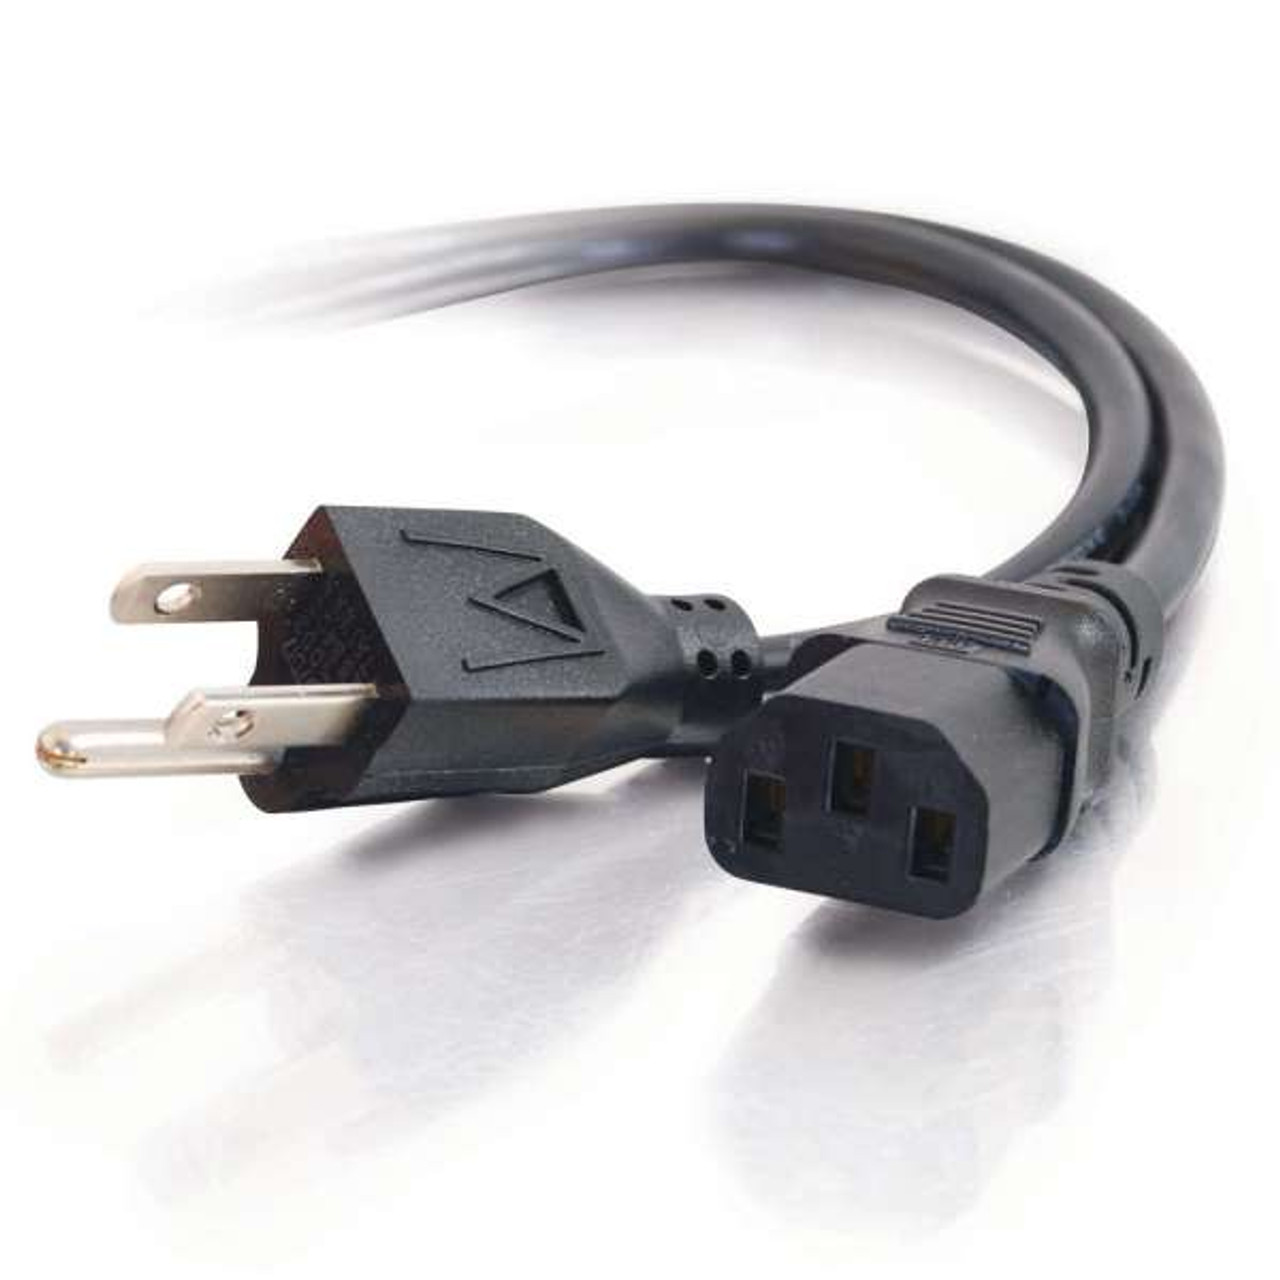 Platinum Series XLR Audio Cable - NLFX Professional